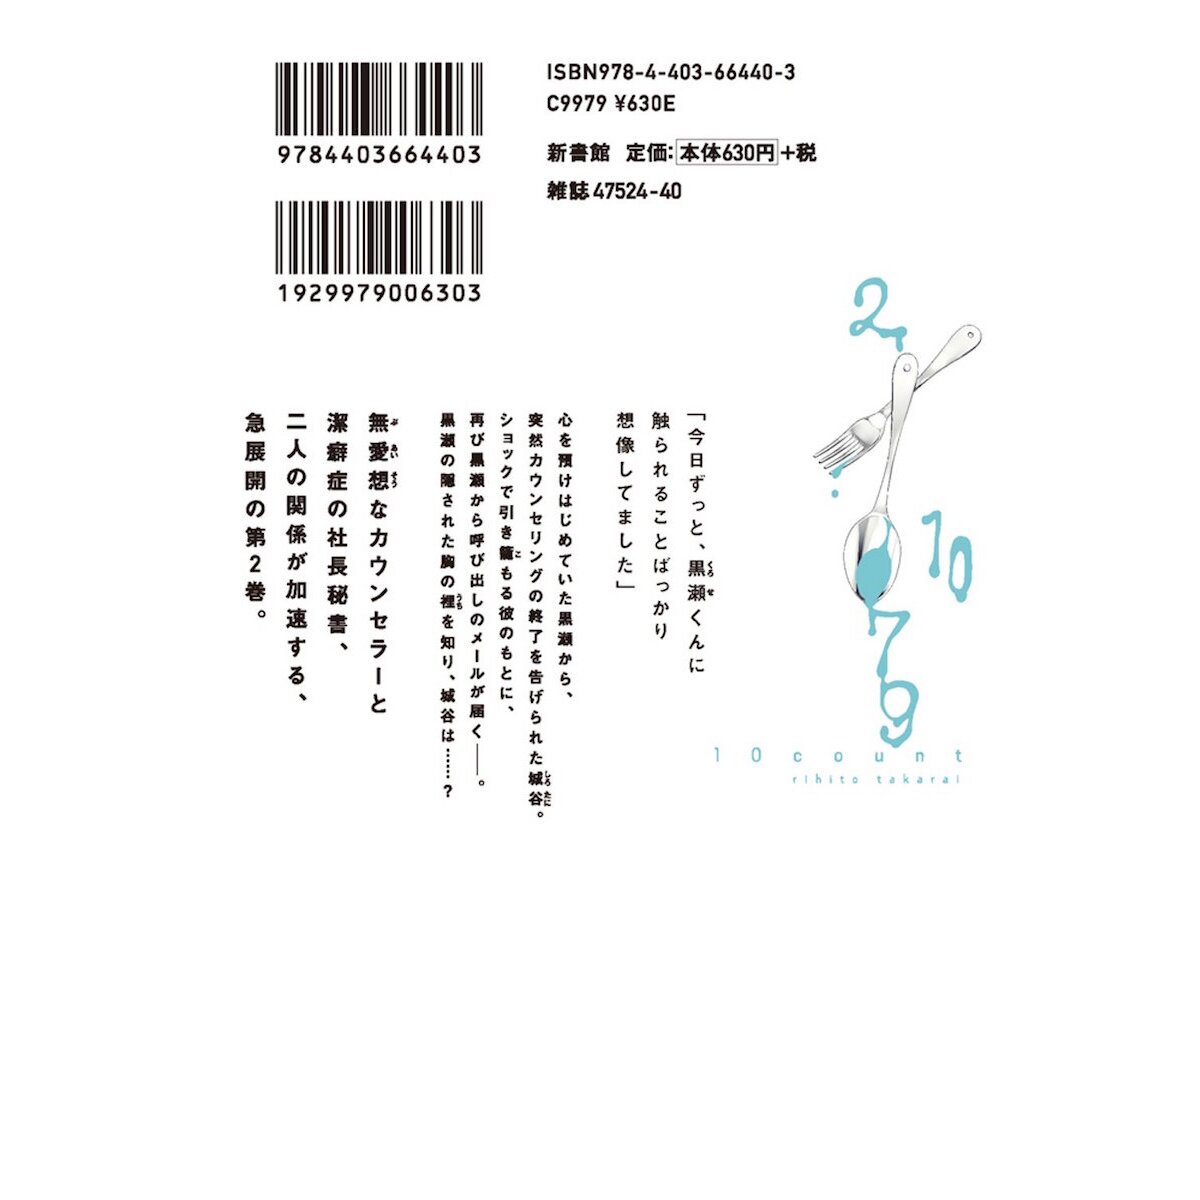 Harukana Receive Vol. 2 100% OFF - Tokyo Otaku Mode (TOM)